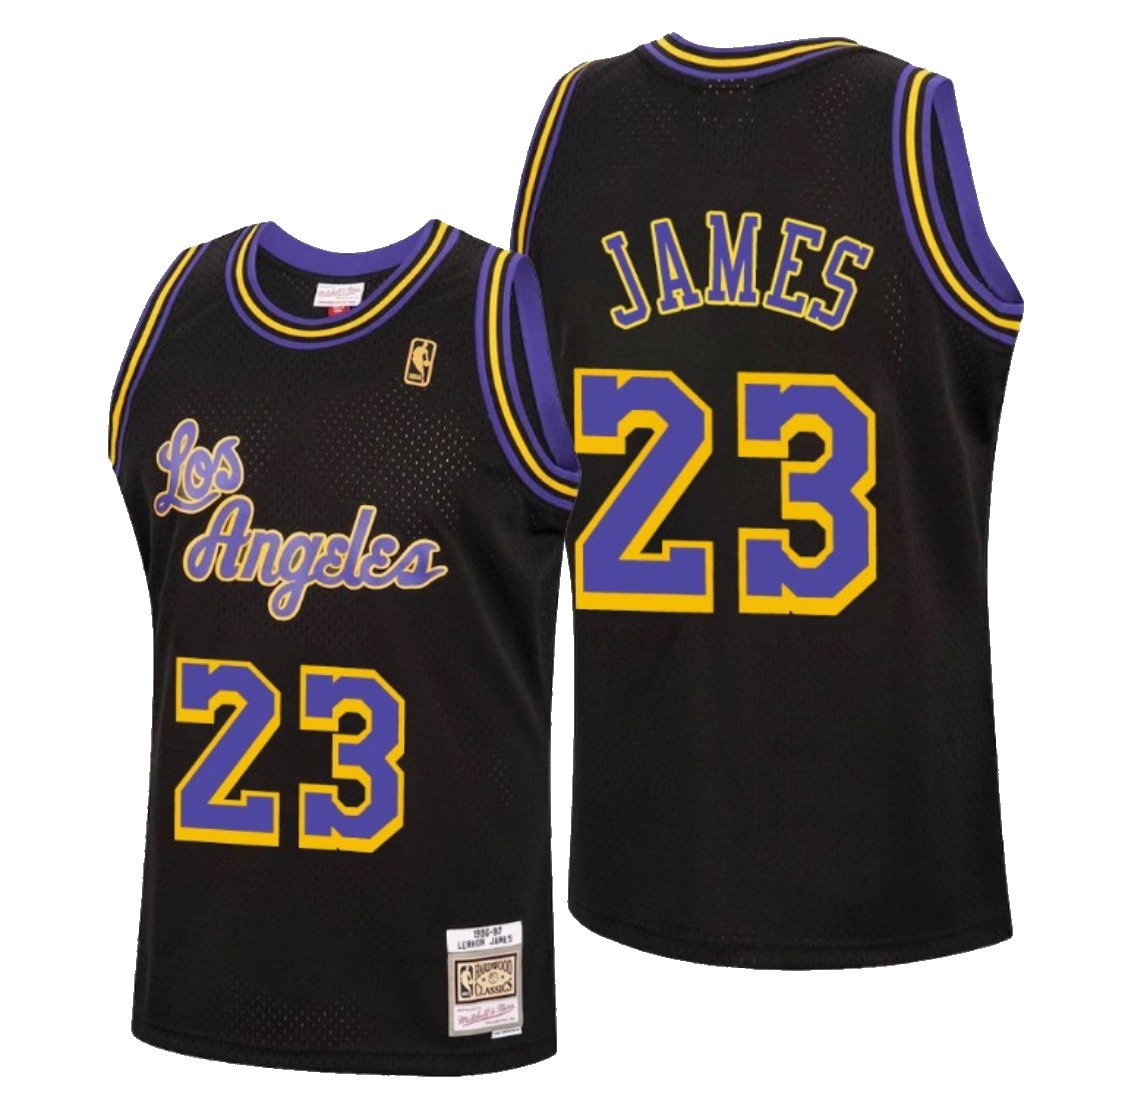 NBA2K Los Angeles Lakers Custom Jersey Concepts by @hooprstore